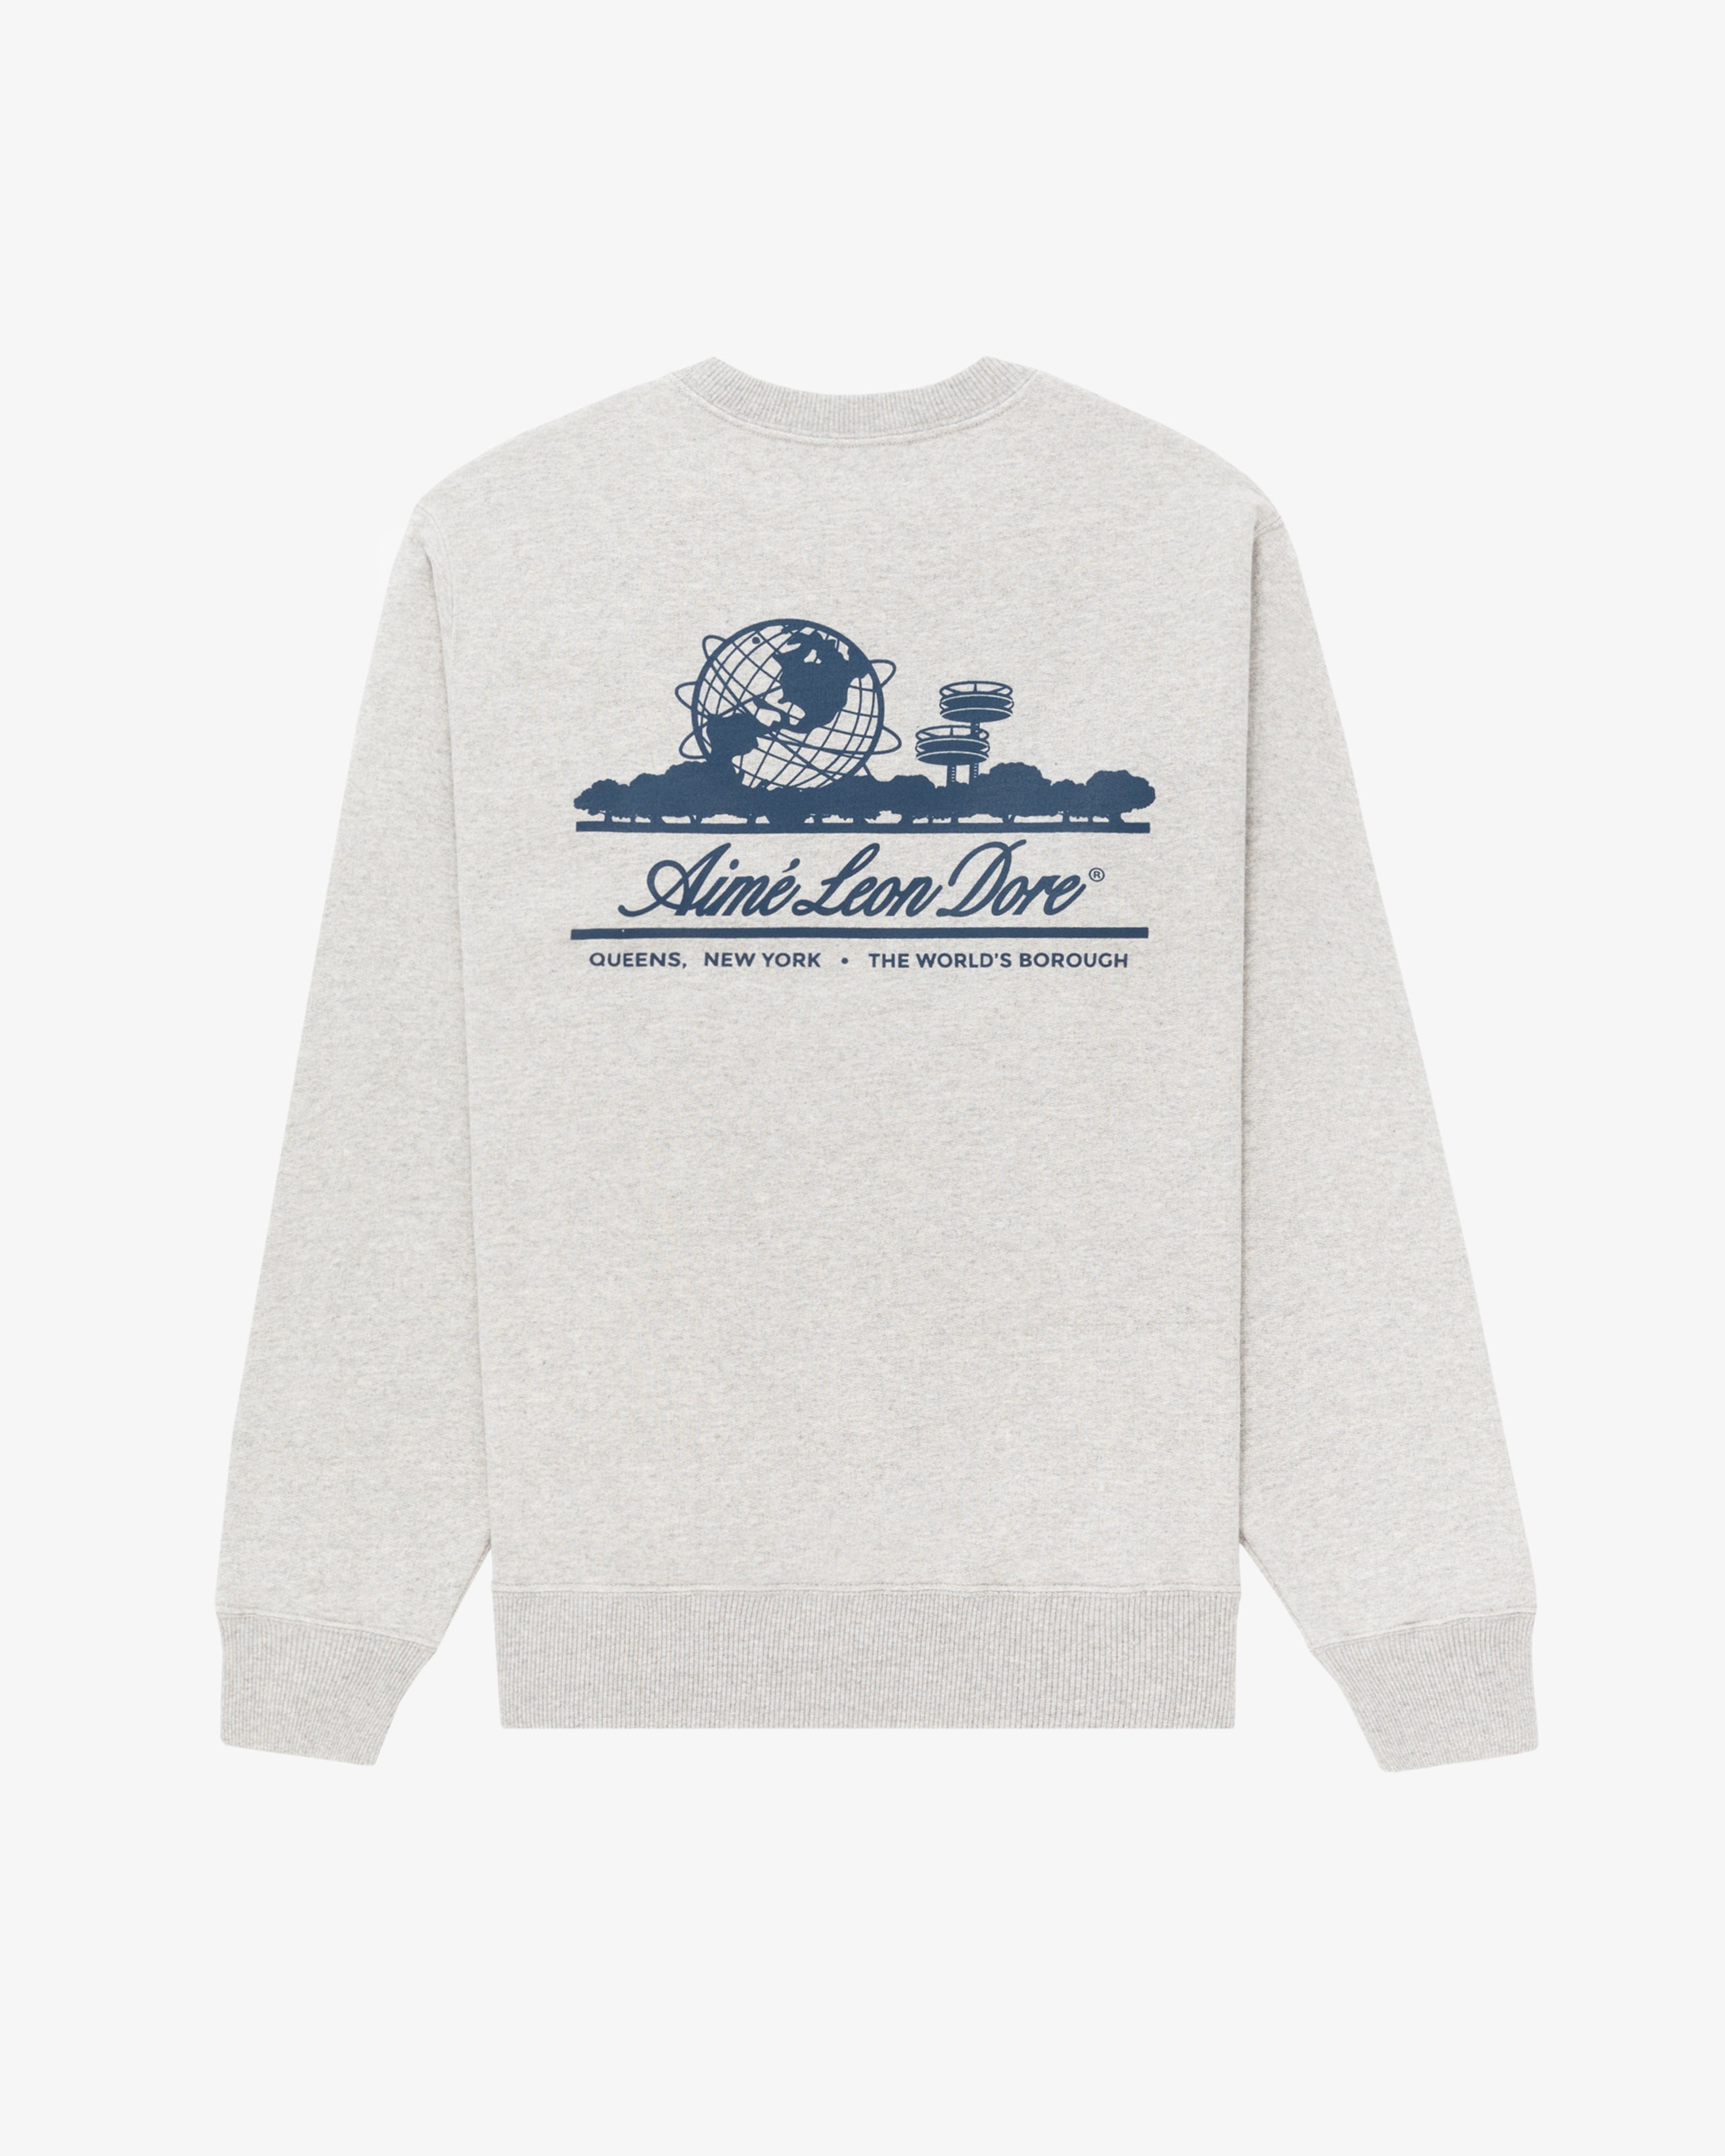 Unisphere  Crewneck Sweatshirt